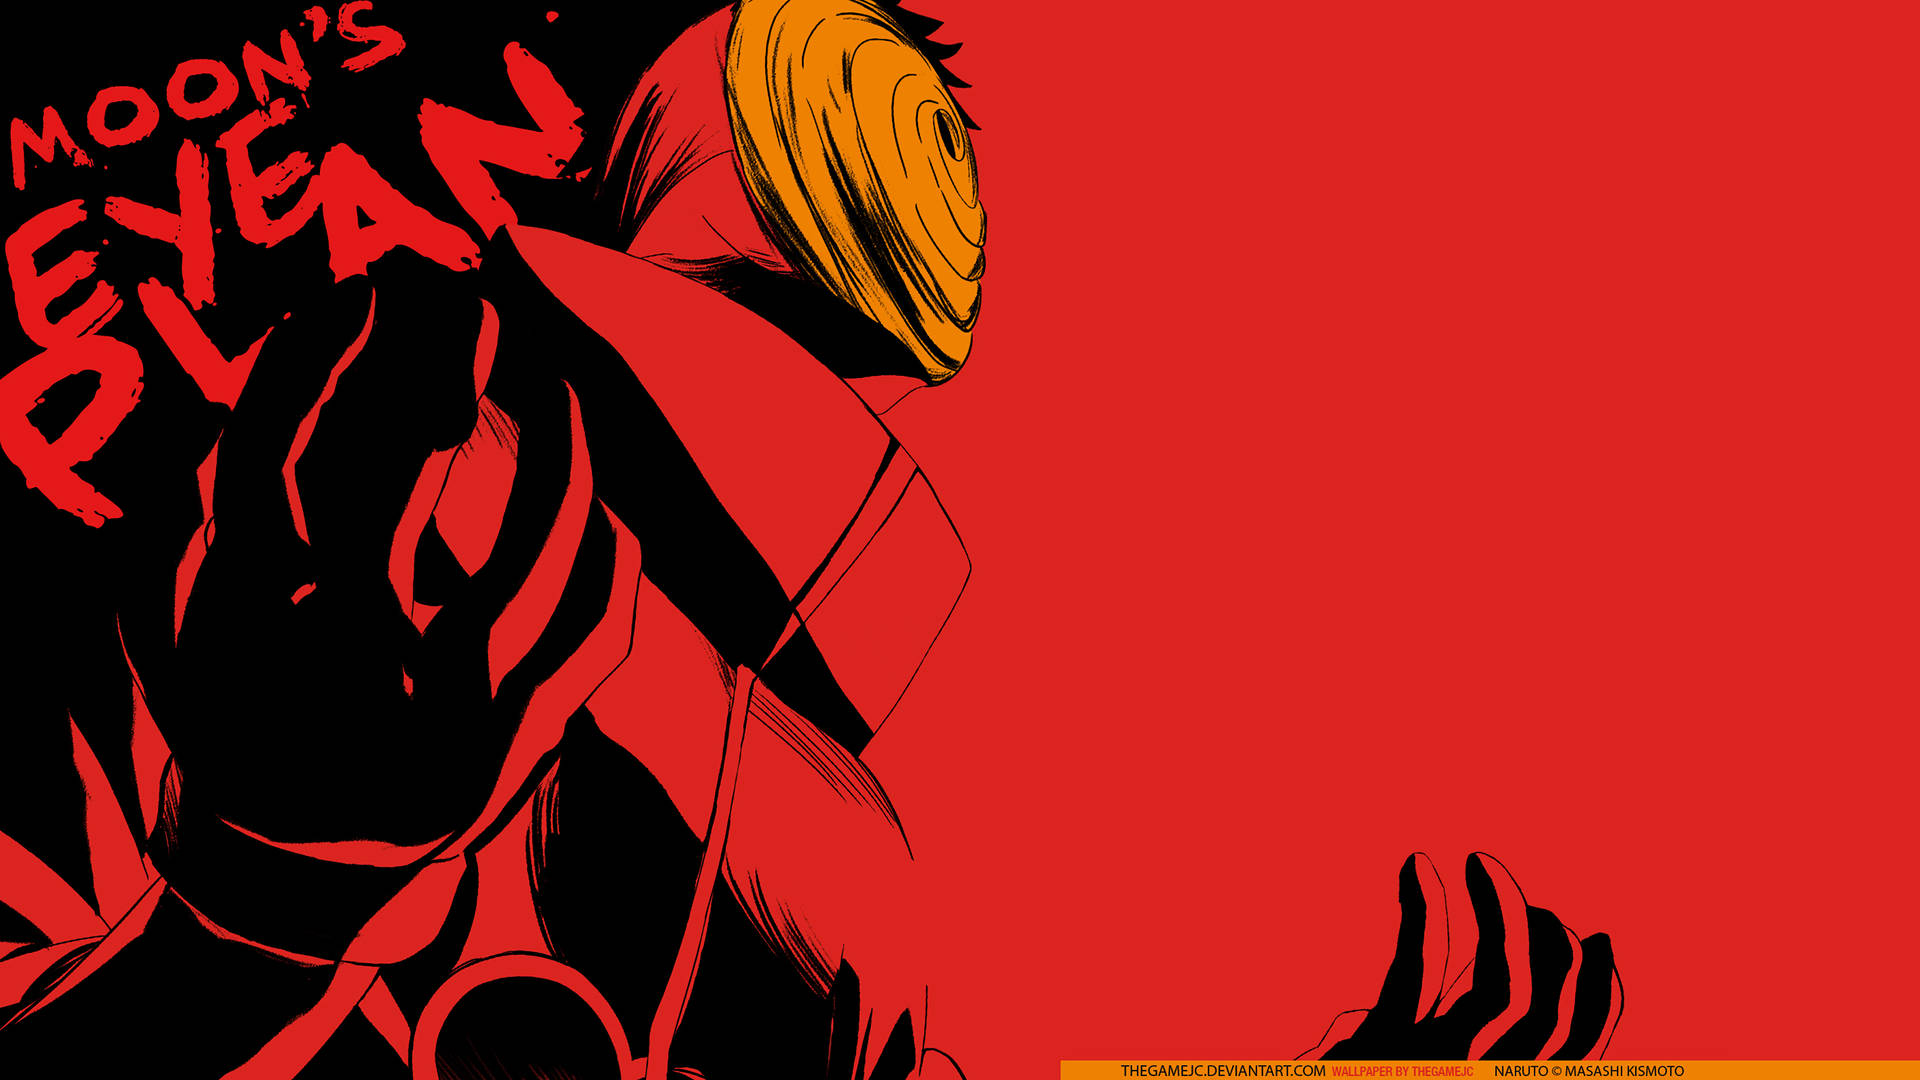 Dynamic Image Of Obito Uchiha Unleashing Power Background